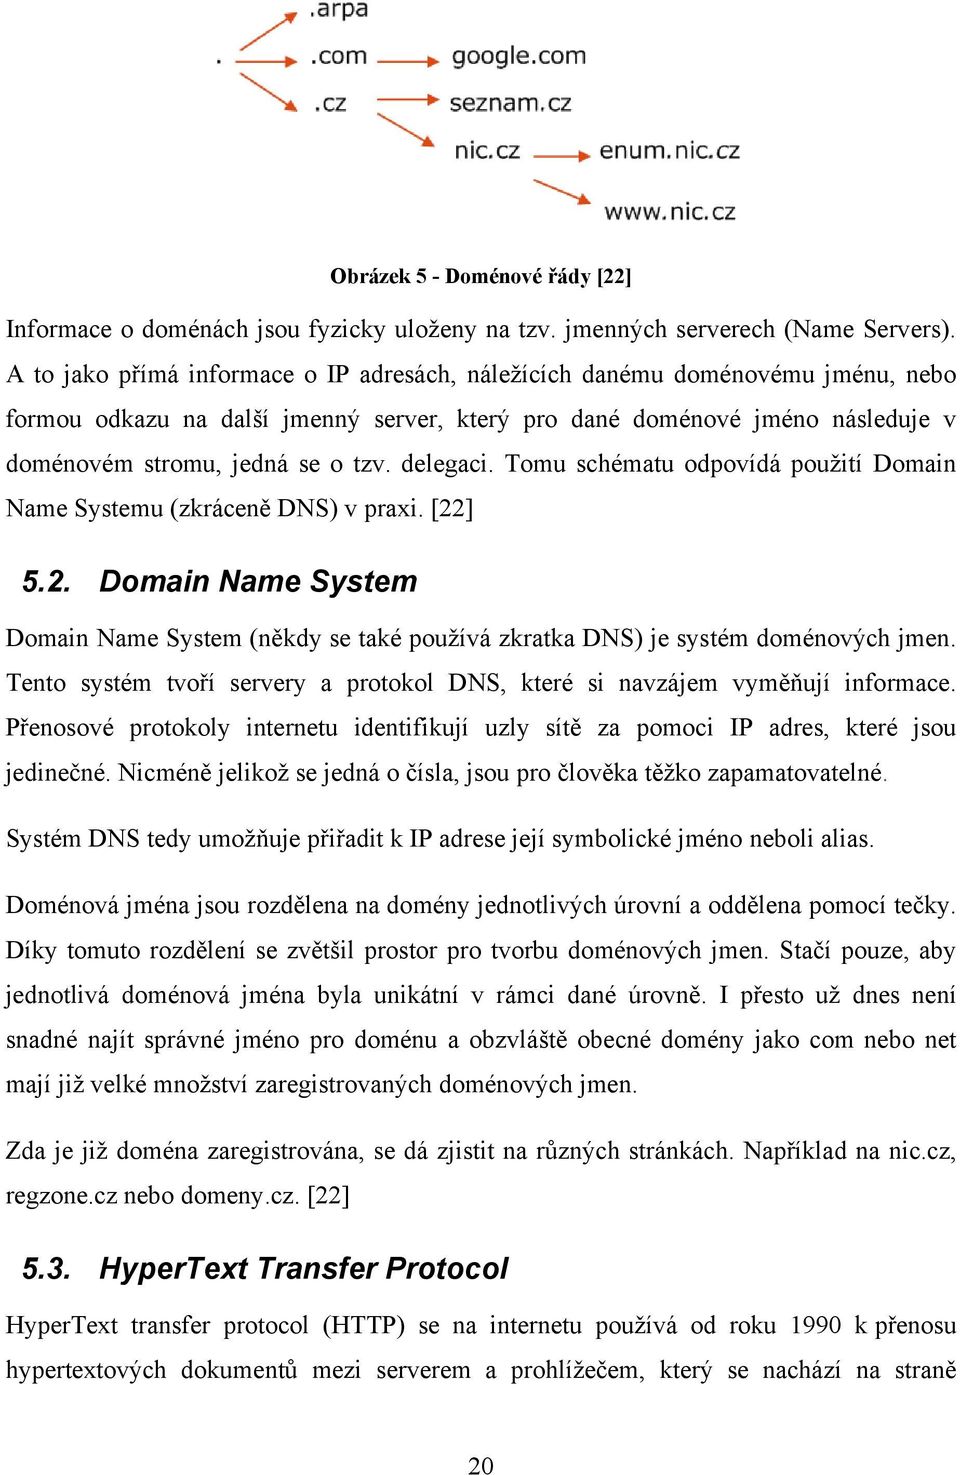 delegaci. Tomu schématu odpovídá použití Domain Name Systemu (zkráceně DNS) v praxi. [22] 5.2. Domain Name System Domain Name System (někdy se také používá zkratka DNS) je systém doménových jmen.